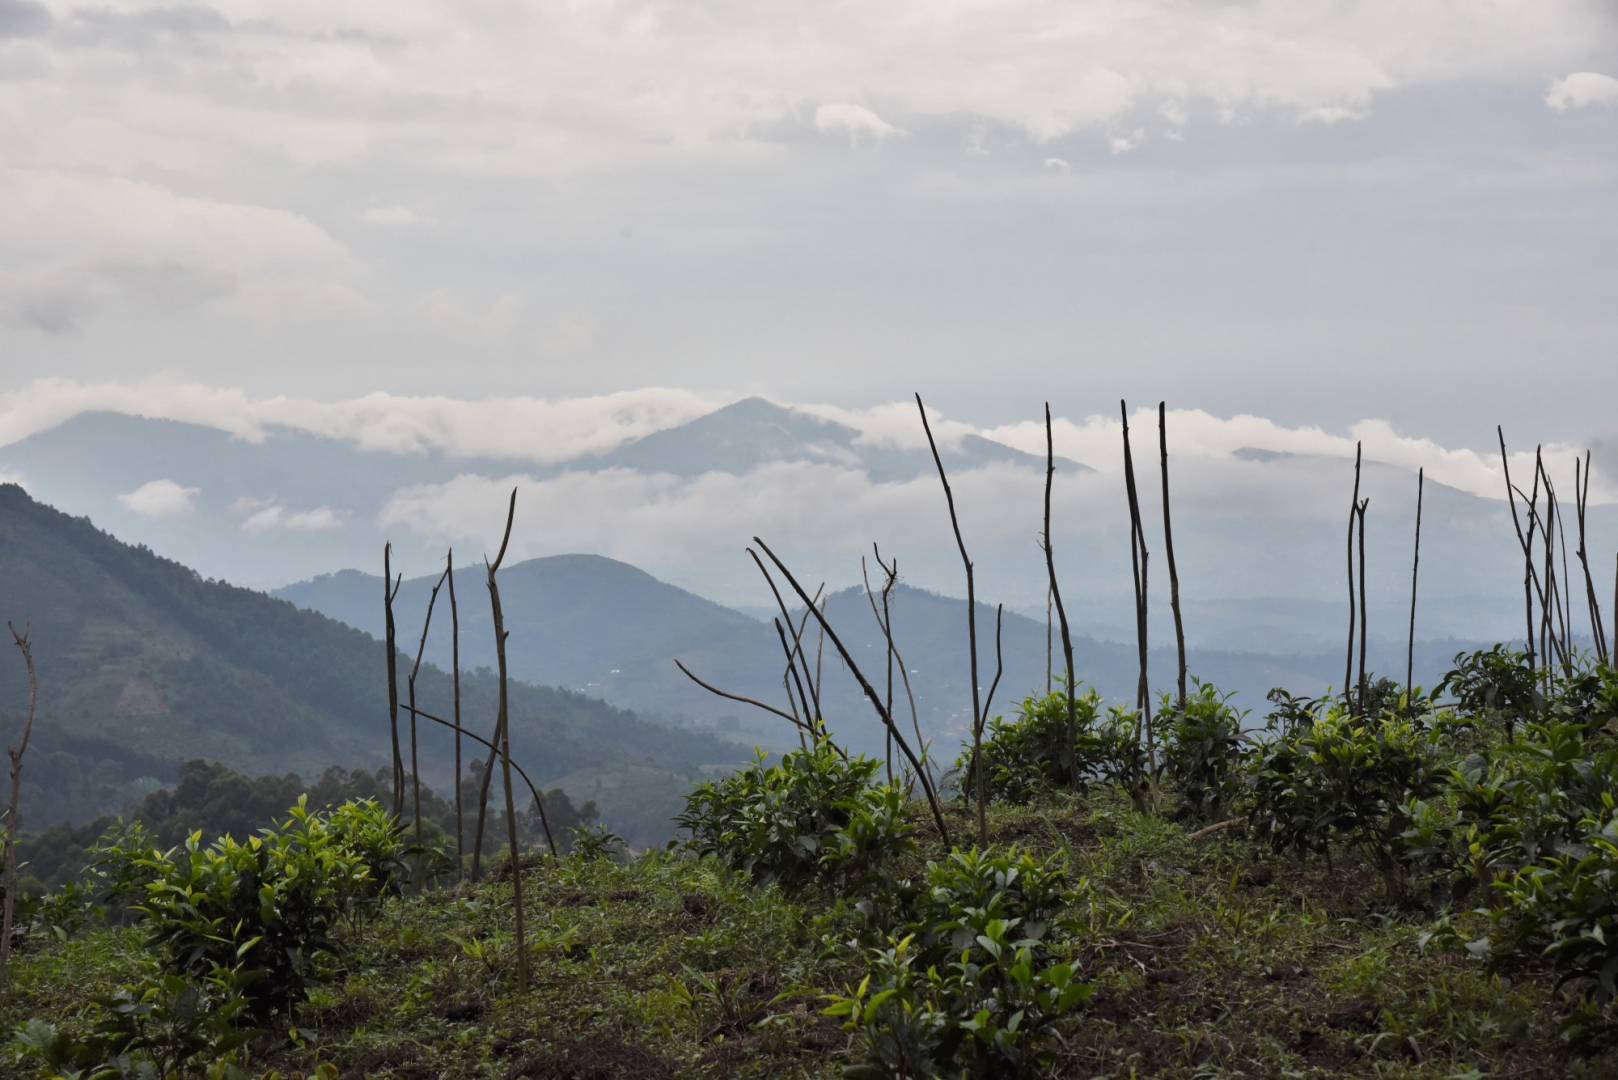 Склоны потухших вулканов в горах Вирунга. Руанда, Африка